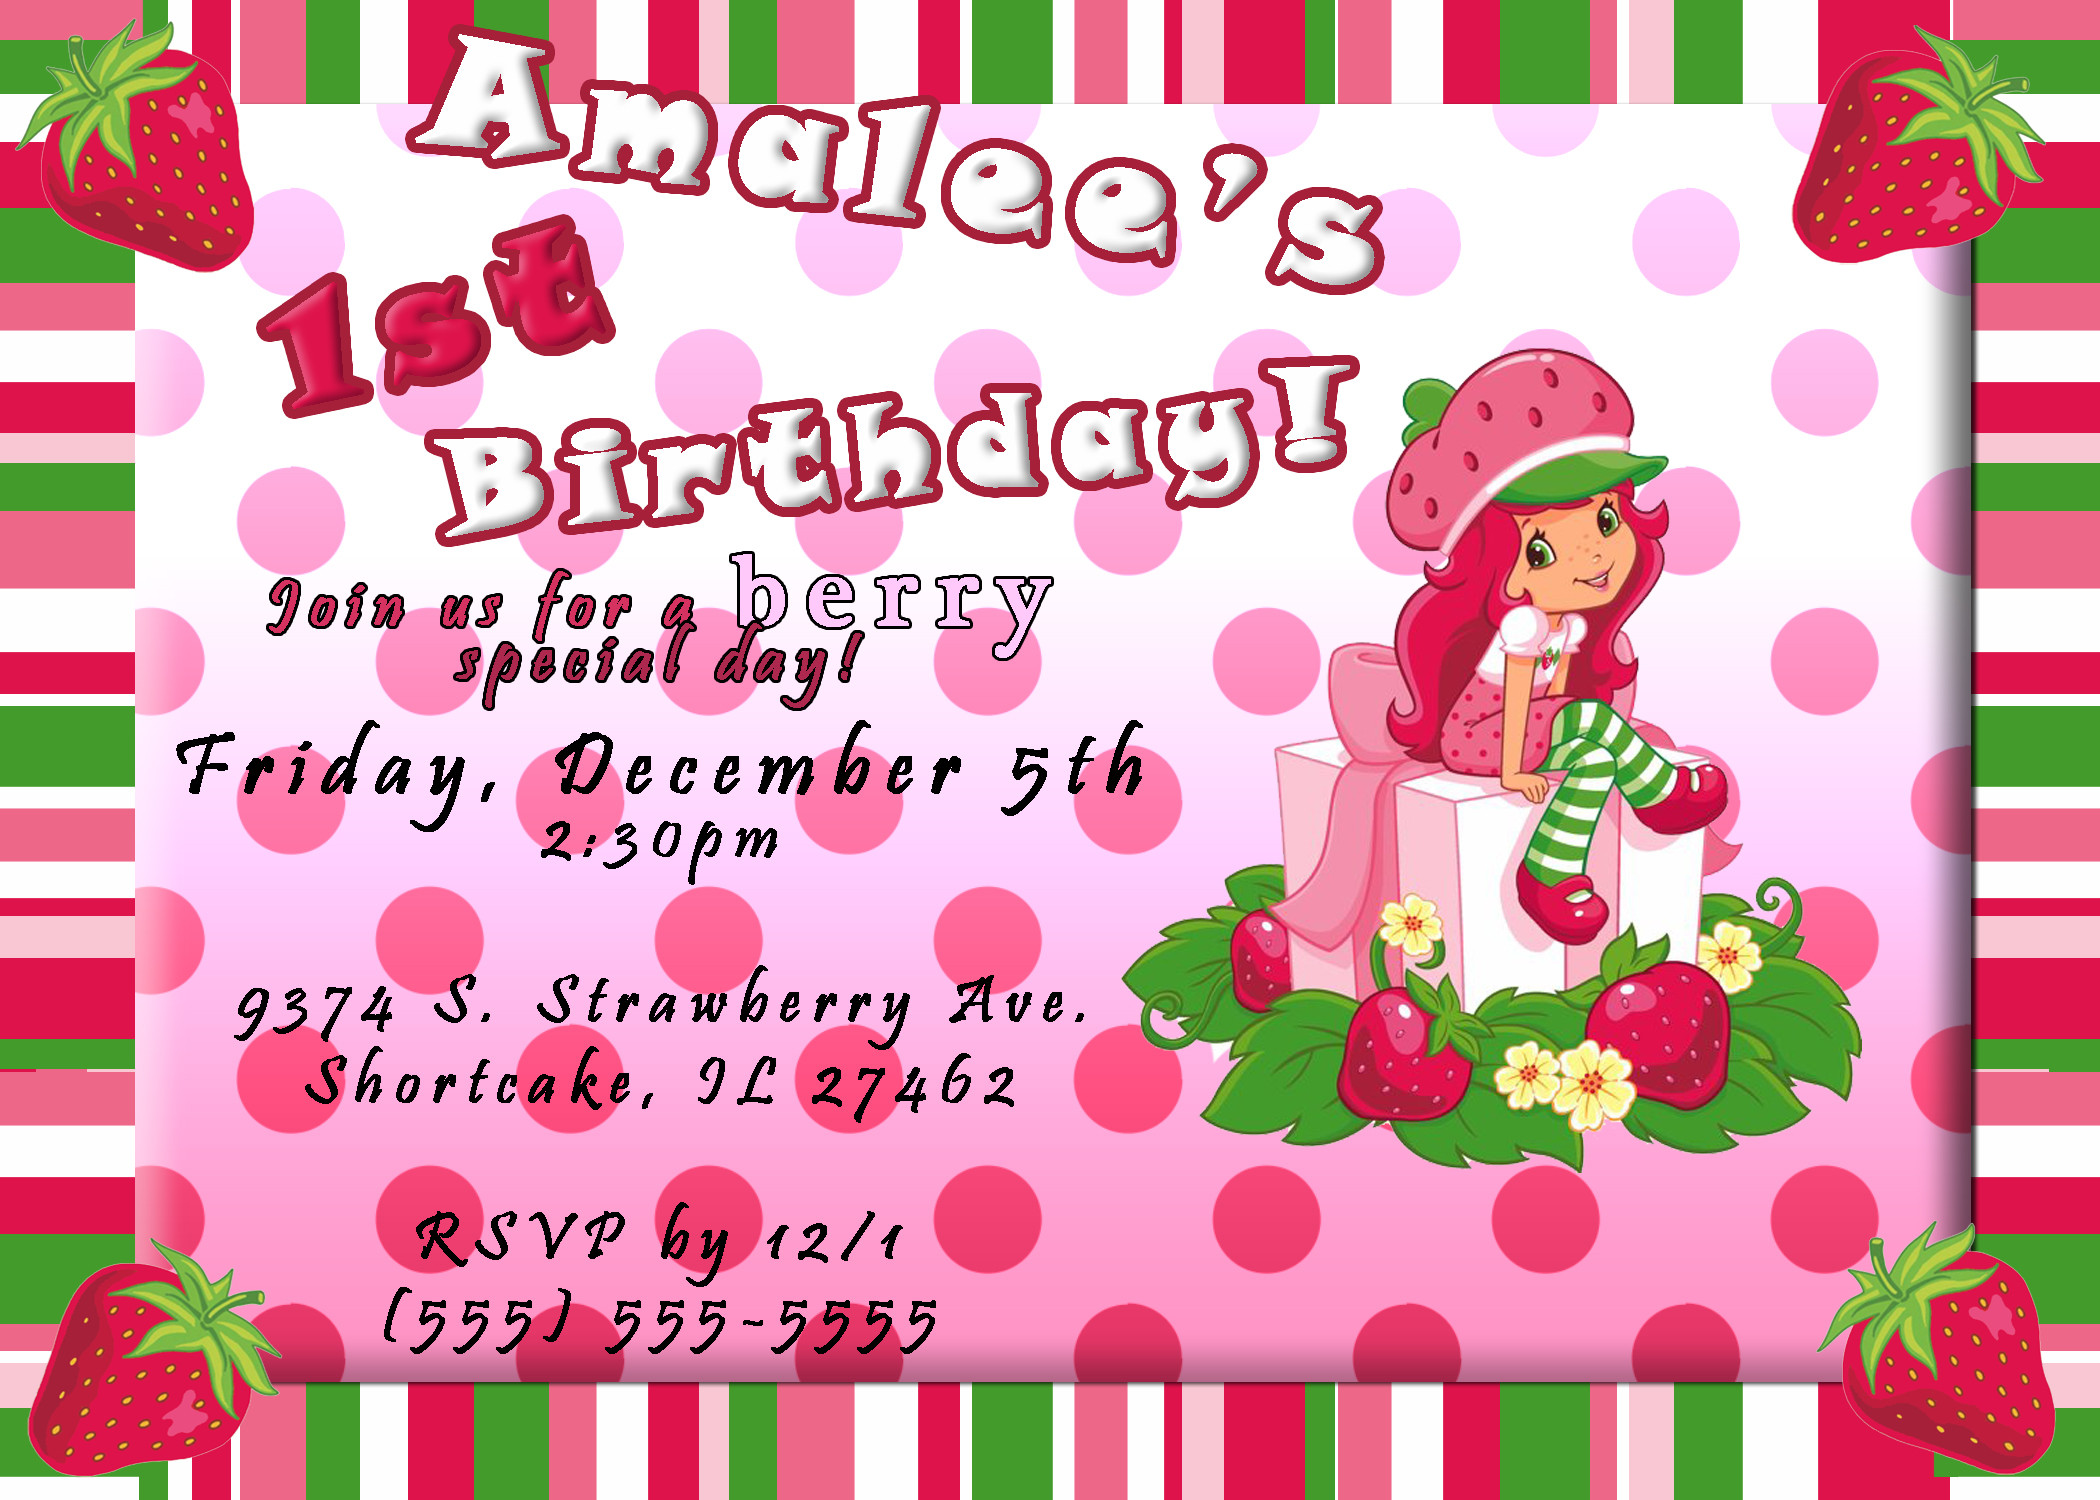 Strawberry Shortcake Birthday Invitations
 Strawberry Shortcake Birthday Invitation